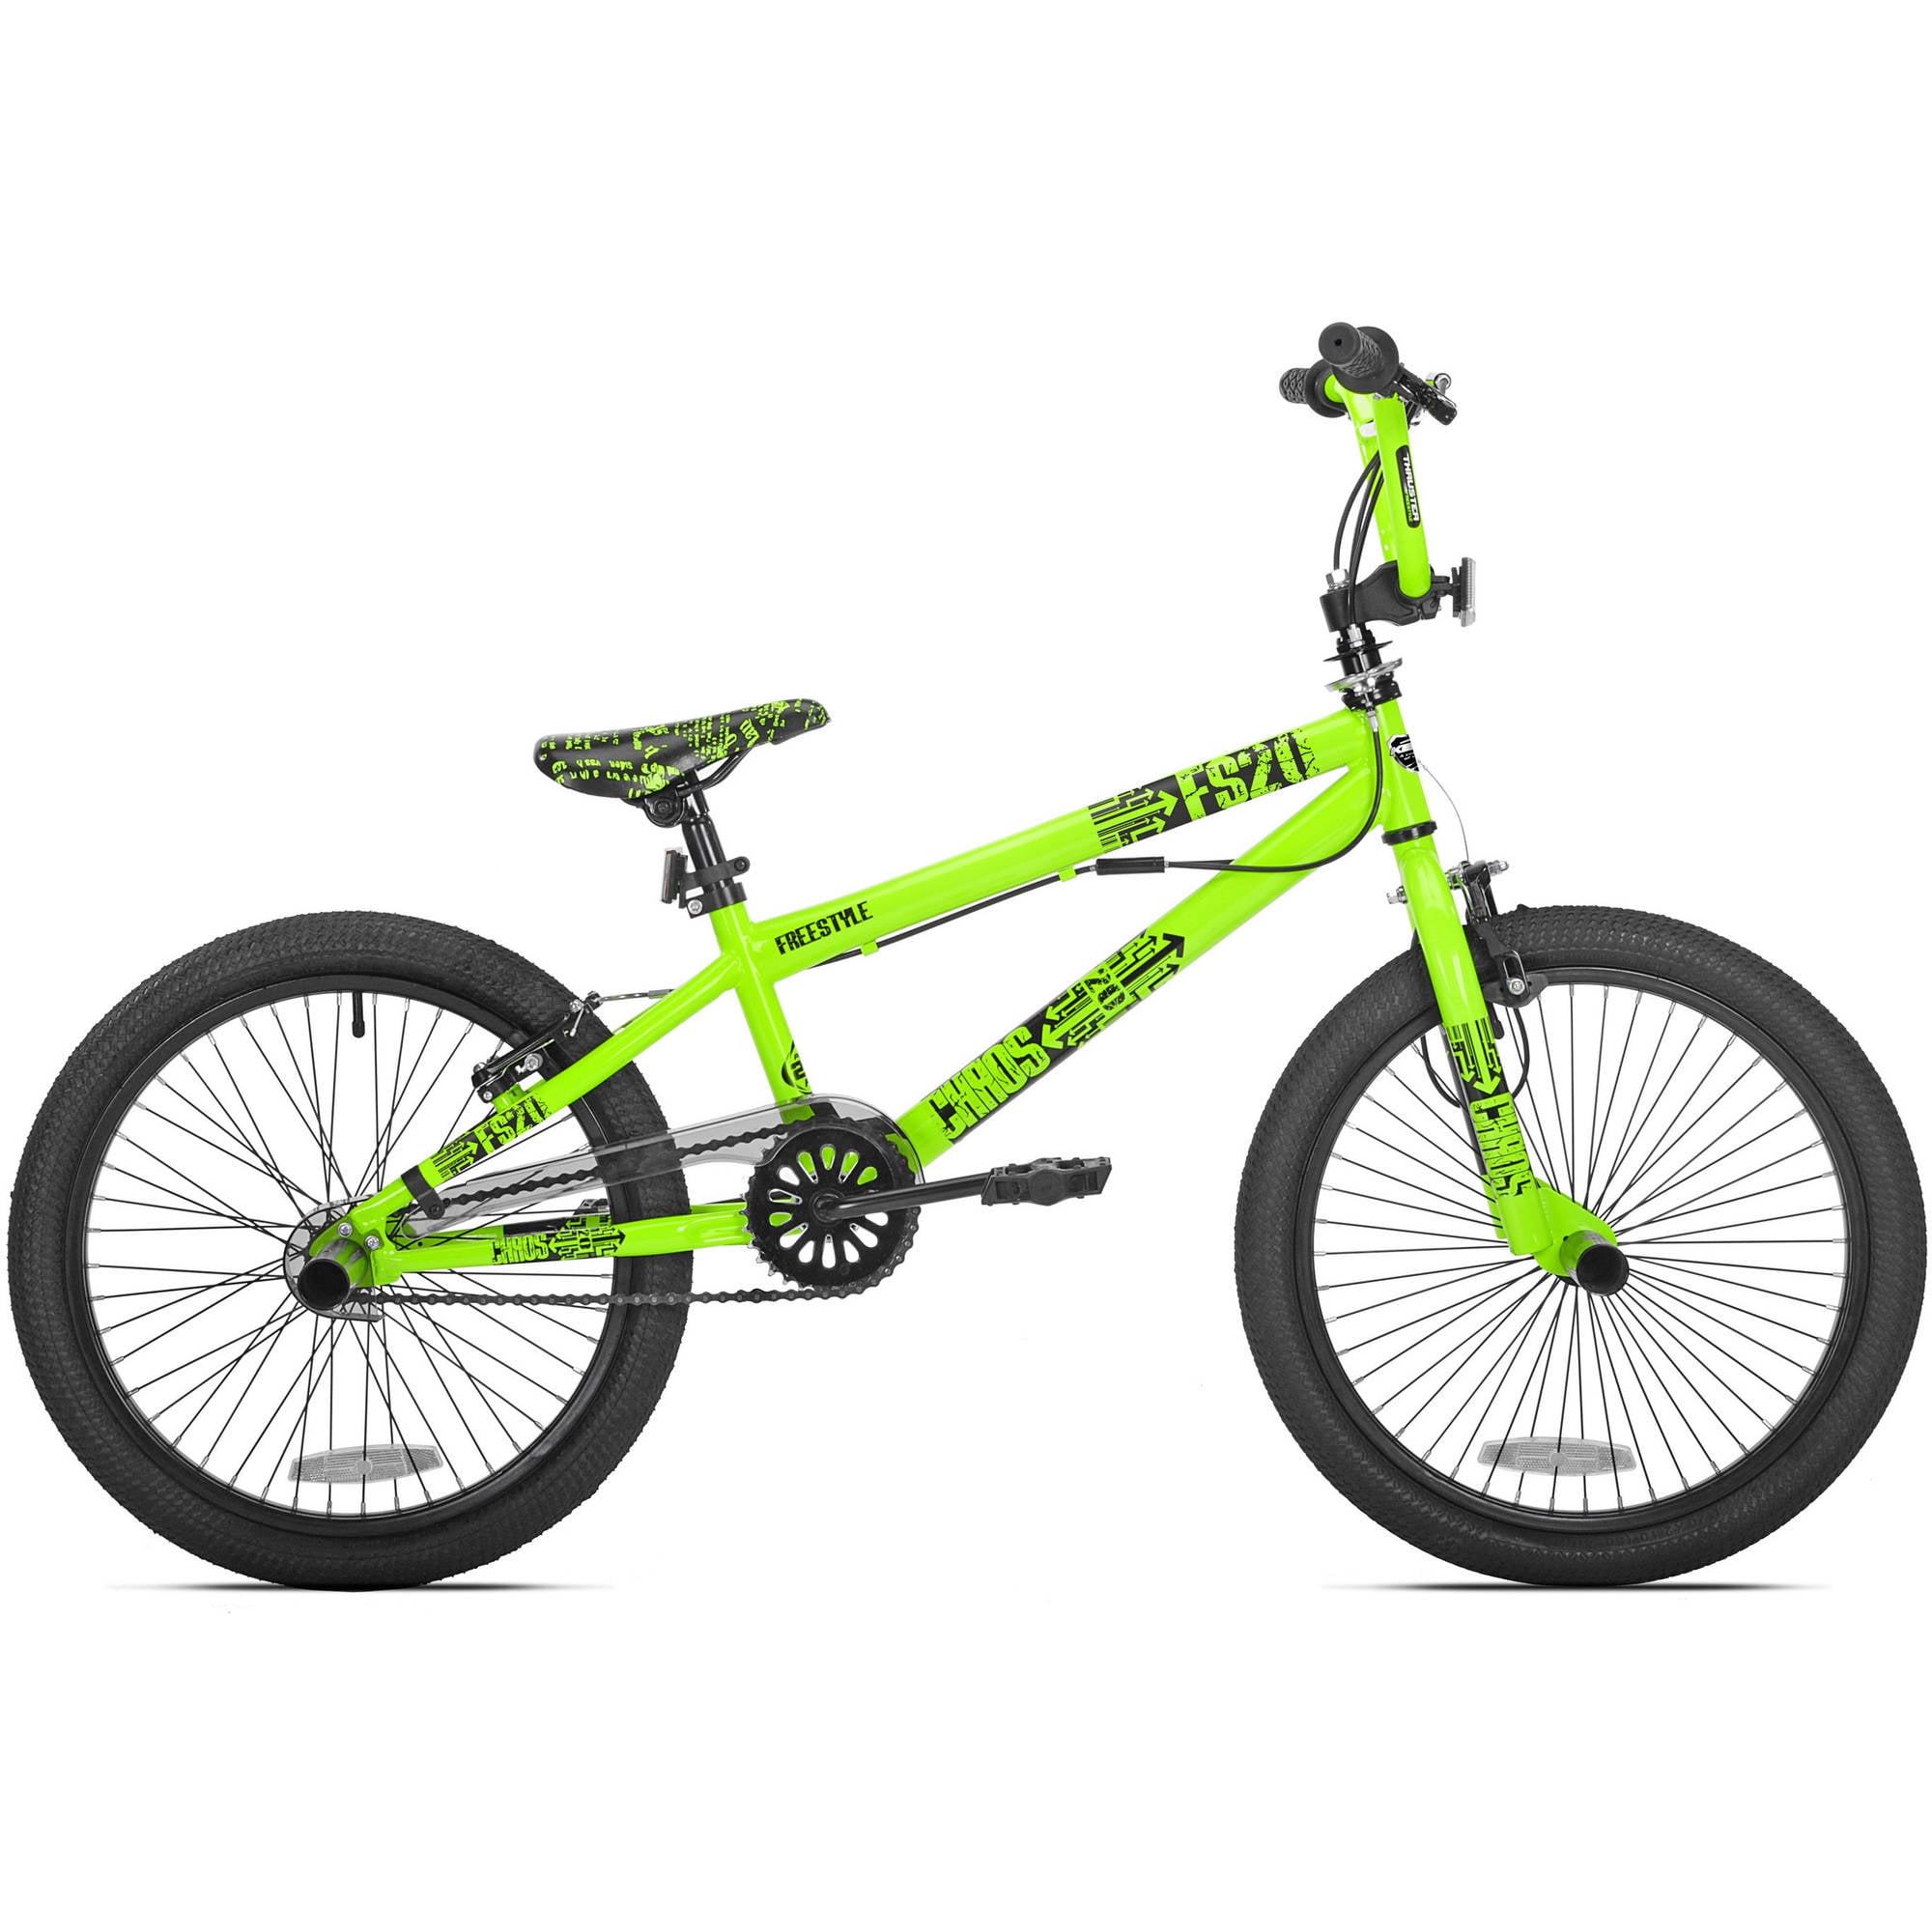 Rooster Radical 20 BMX Bike Green/Black with Spoke Wheels 